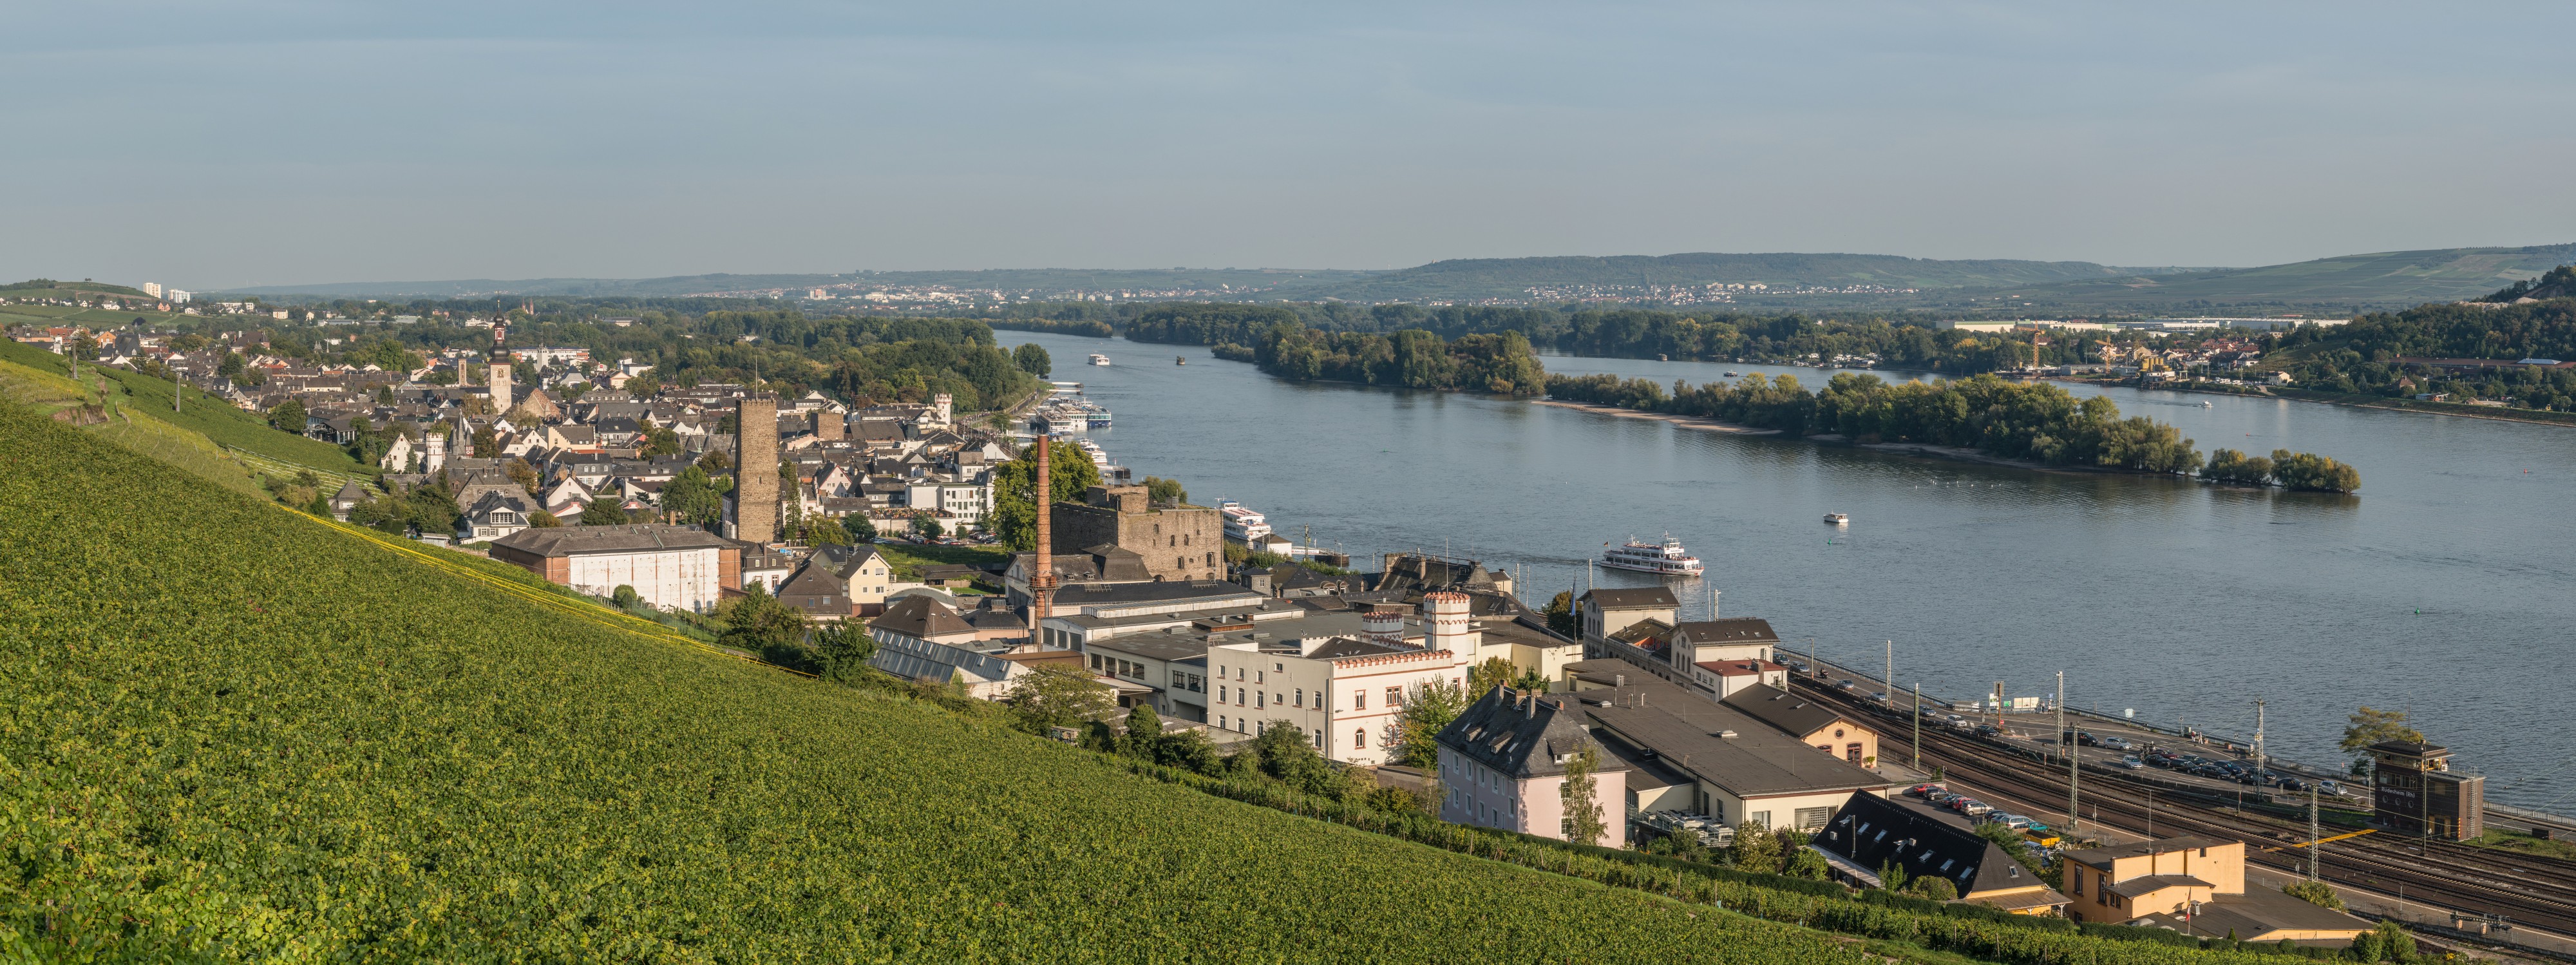 Panoramic View of Rüdesheim am Rhein 20140928 1